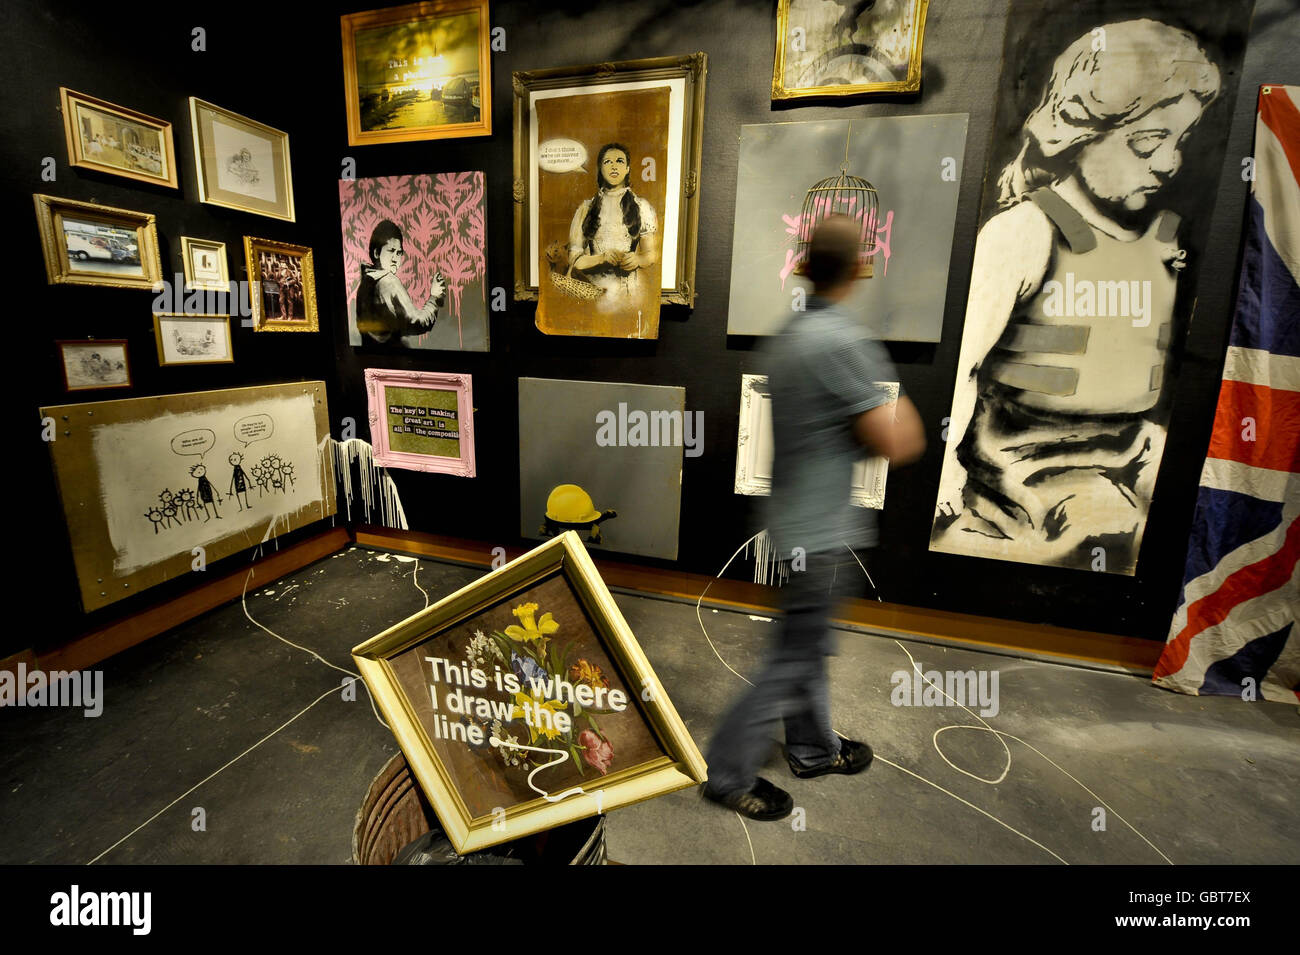 Un uomo ammira le opere d'arte di una mostra dell'artista Banksy al Bristol Museum. Foto Stock